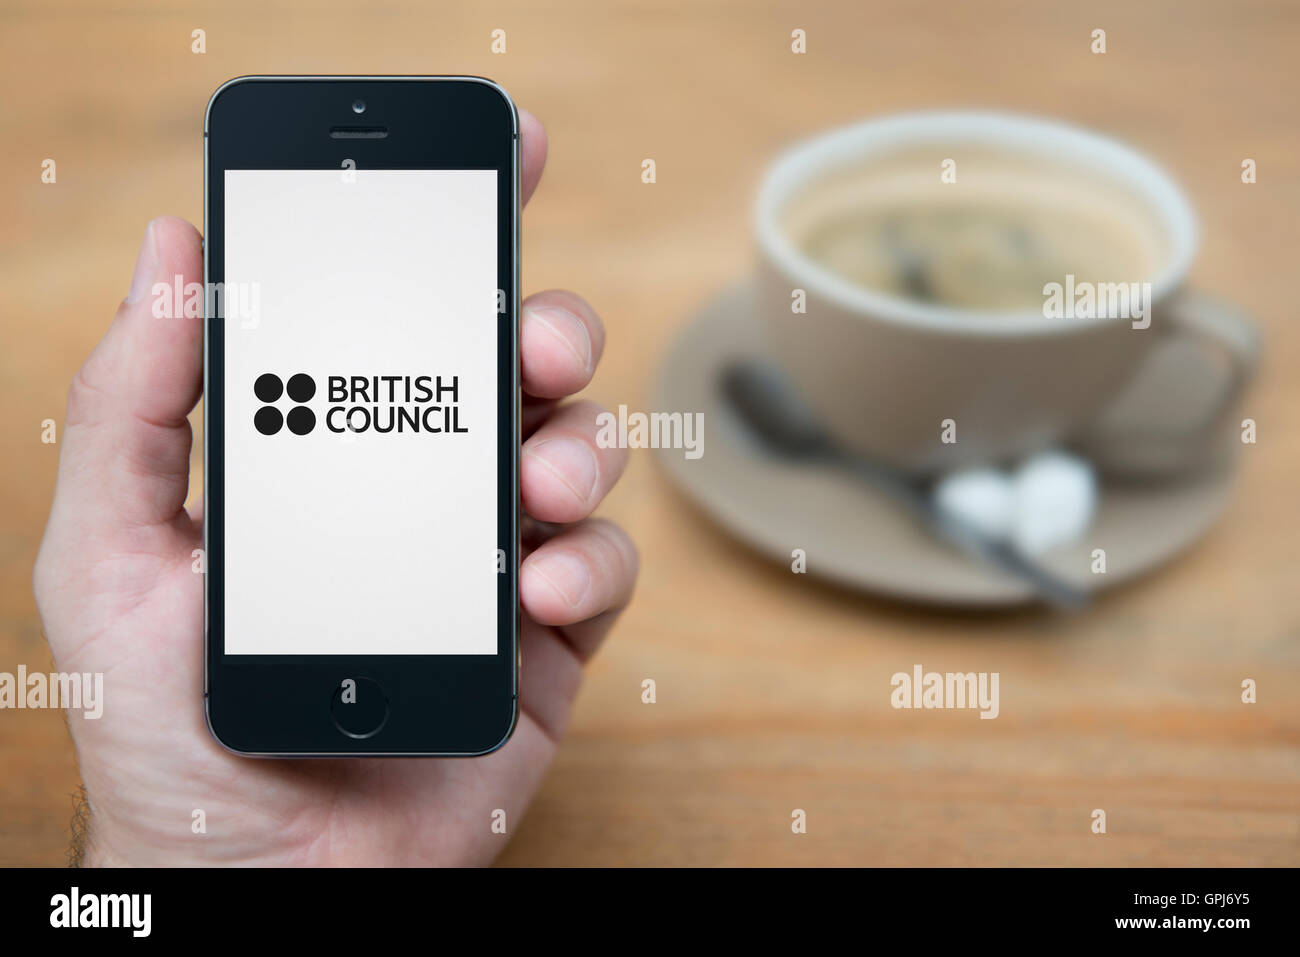 Un homme se penche sur son iPhone qui affiche le logo du Conseil britannique, alors qu'assis avec une tasse de café (usage éditorial uniquement). Banque D'Images